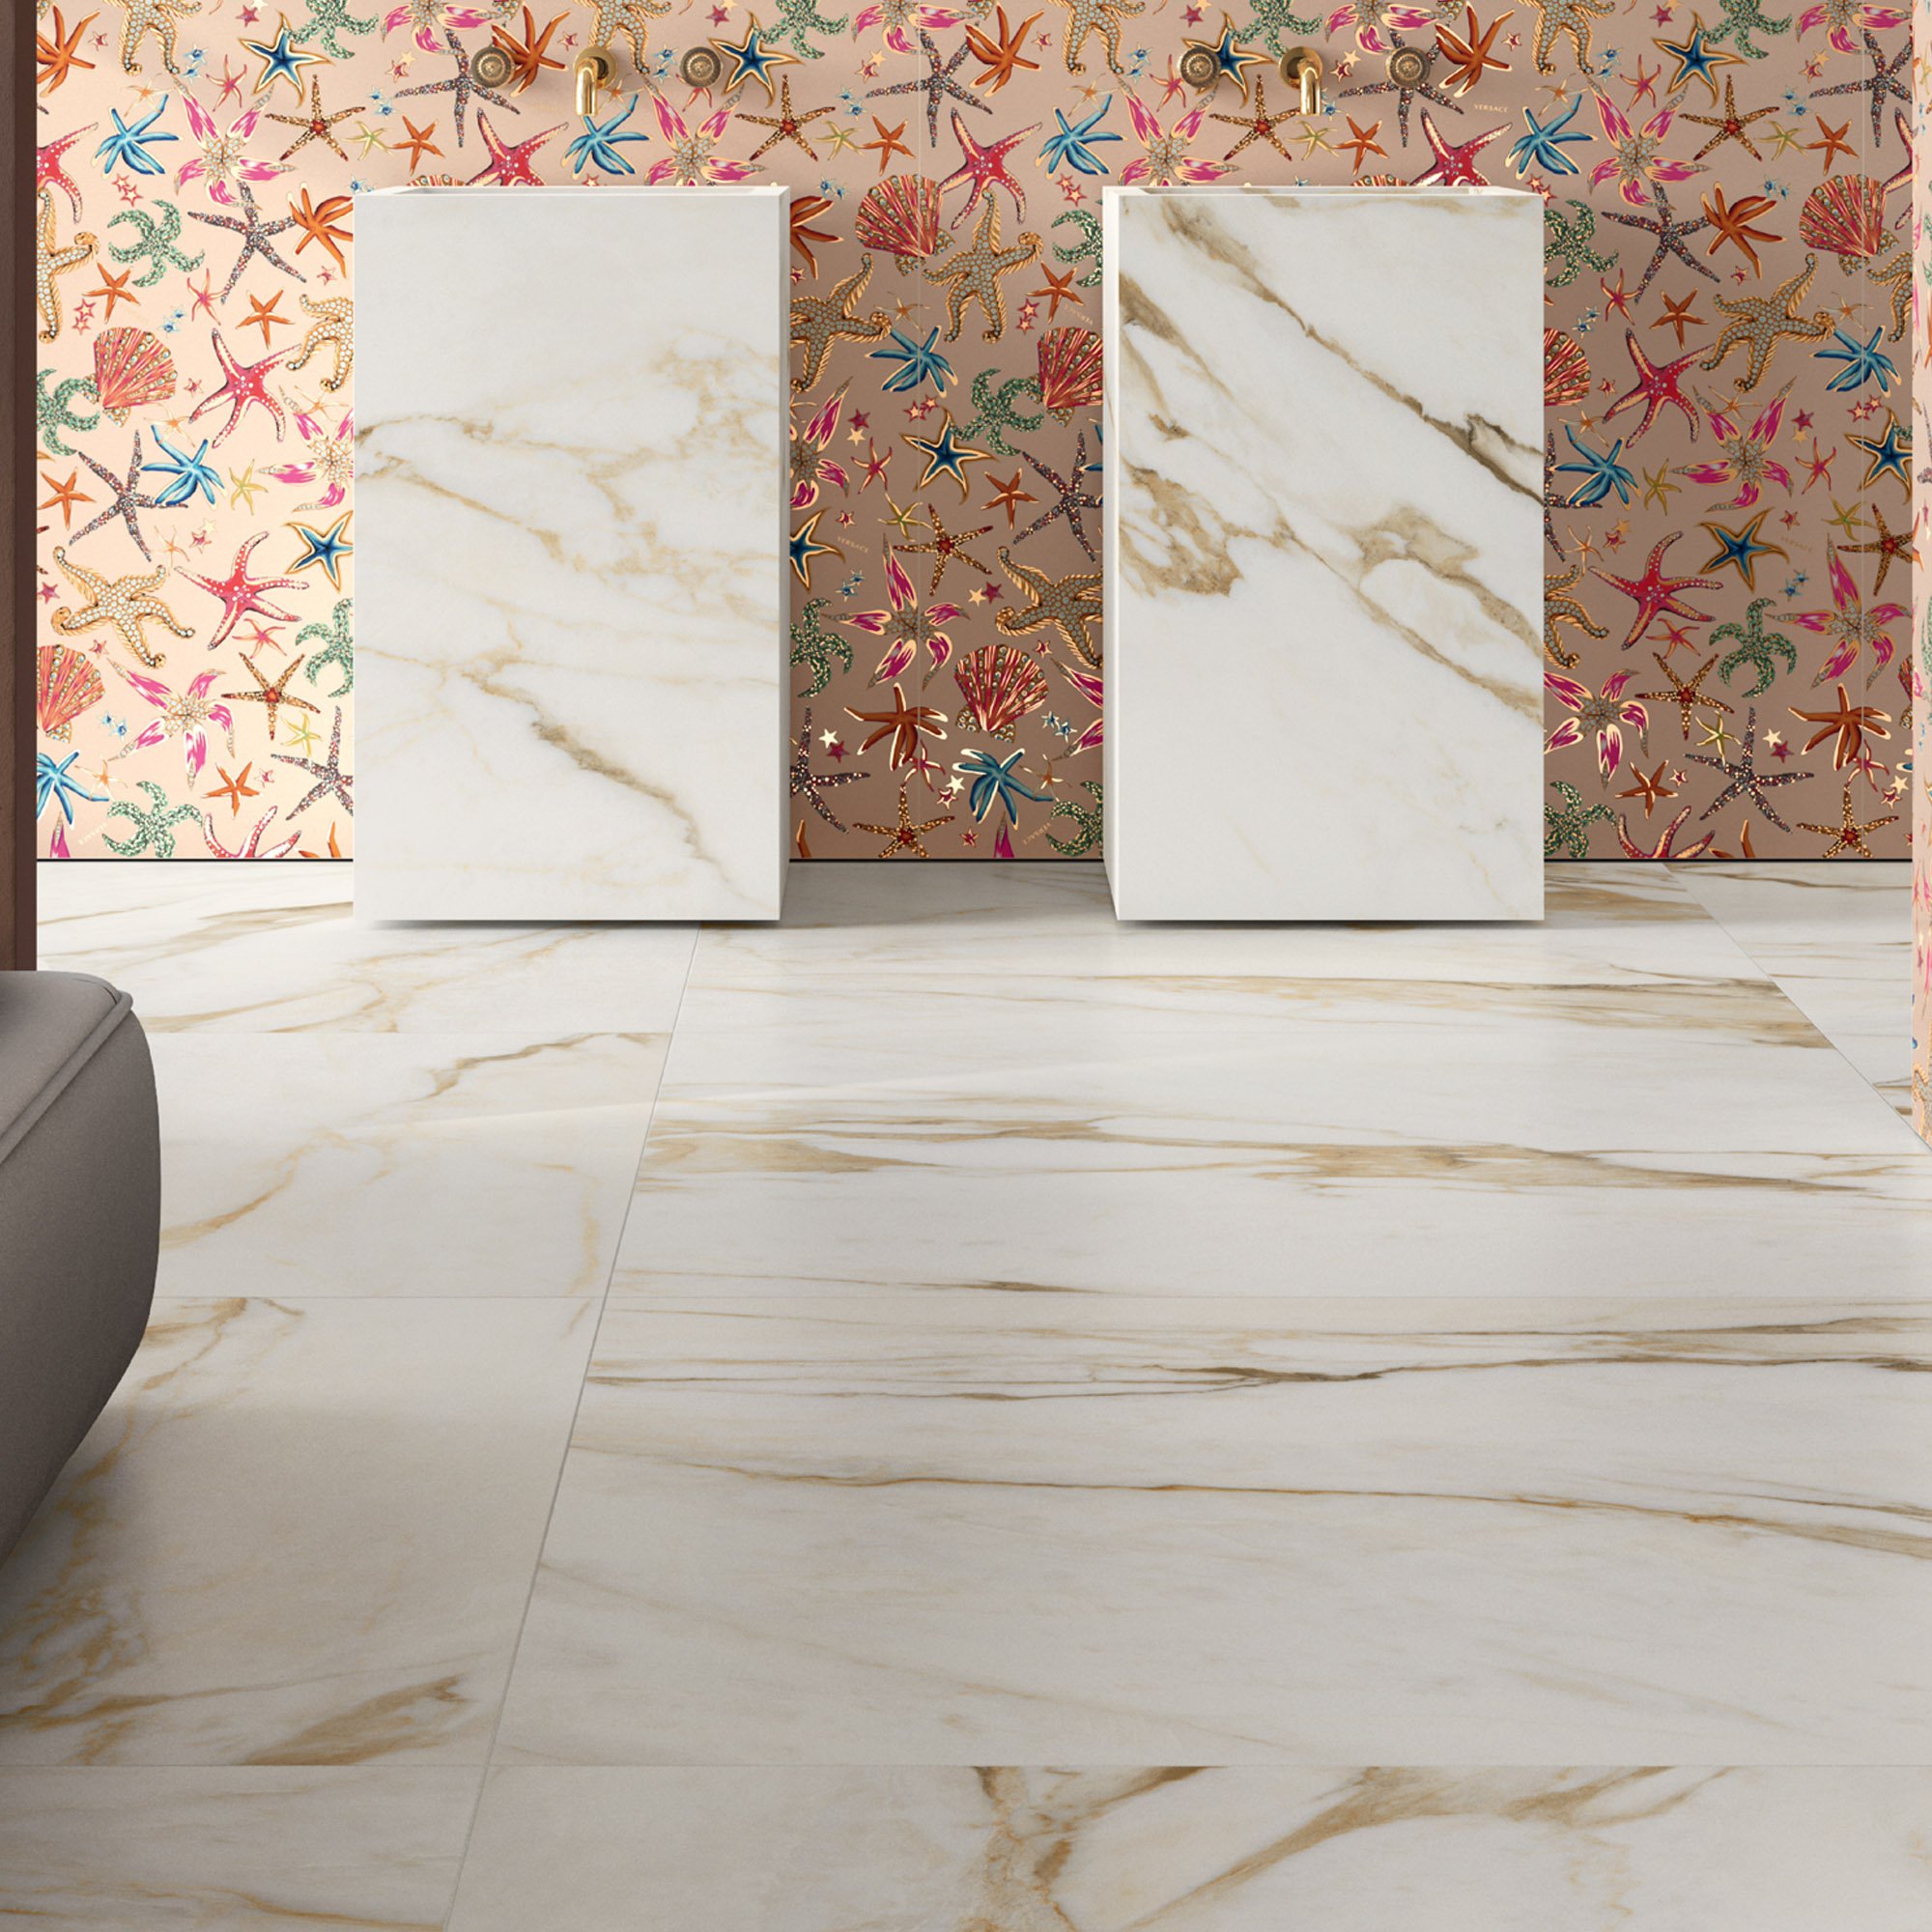 versace-ceramics-sammys-designer-flooring-maximvs-room-inspiration-5